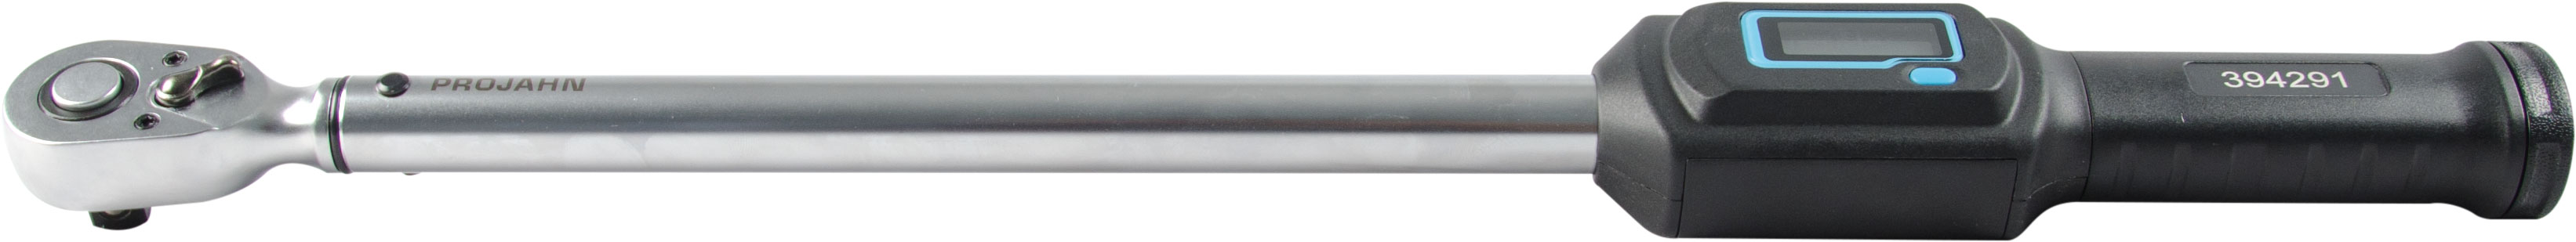 Torque wrench XYXYX21101